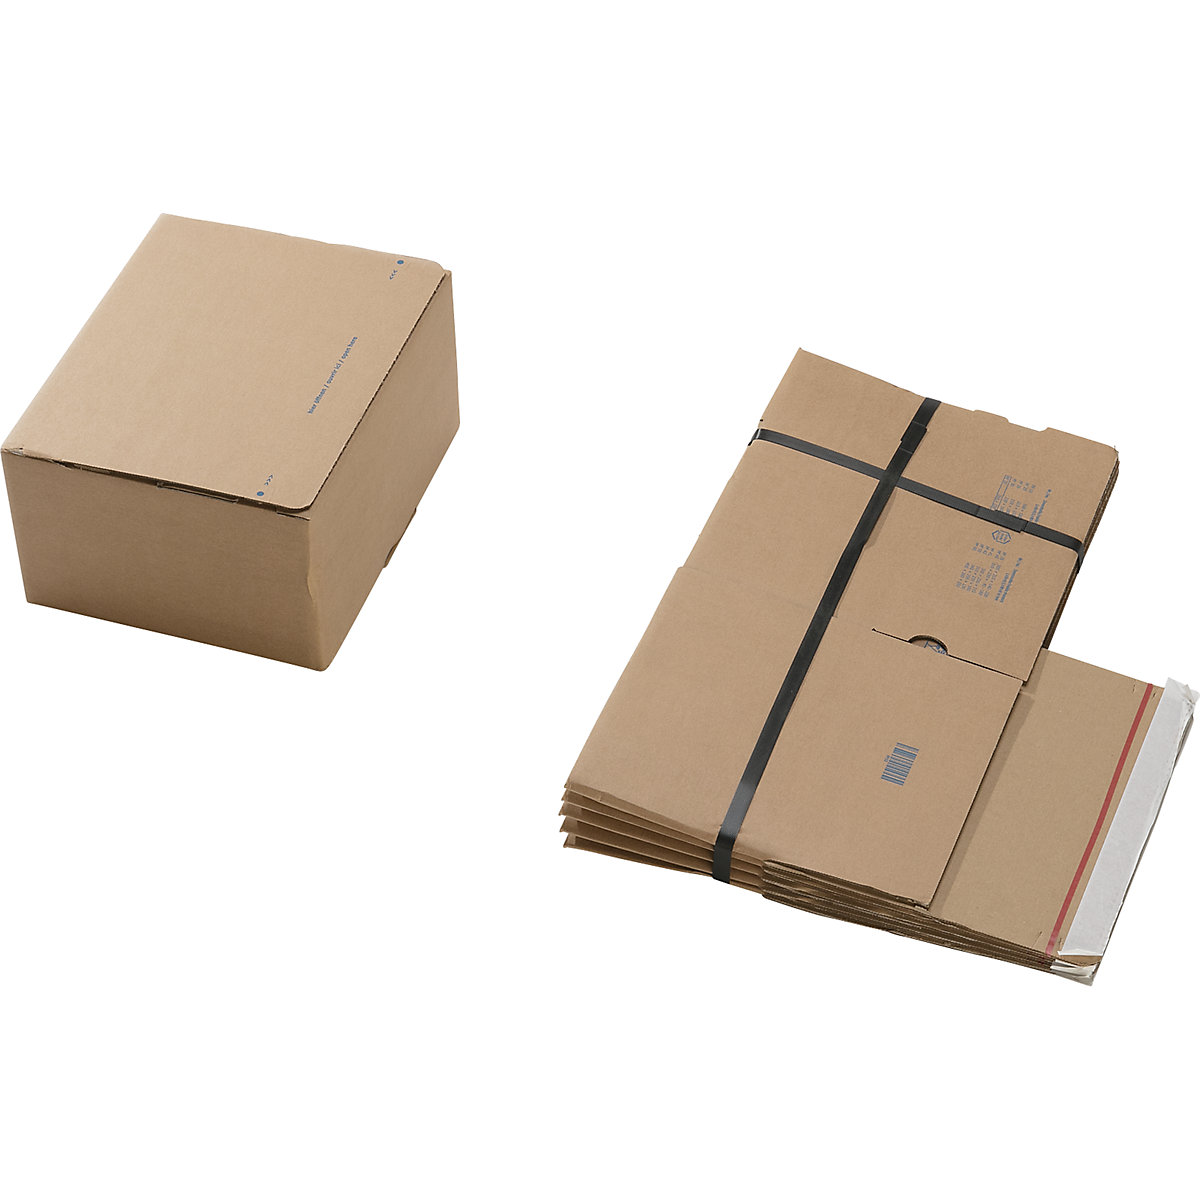 Cajas para envíos, con fondo preparado para montaje rápido y cierre autoadhesivo, dimensiones interiores L x A x H 260 x 220 x 130 mm, UE 100 unid.-1